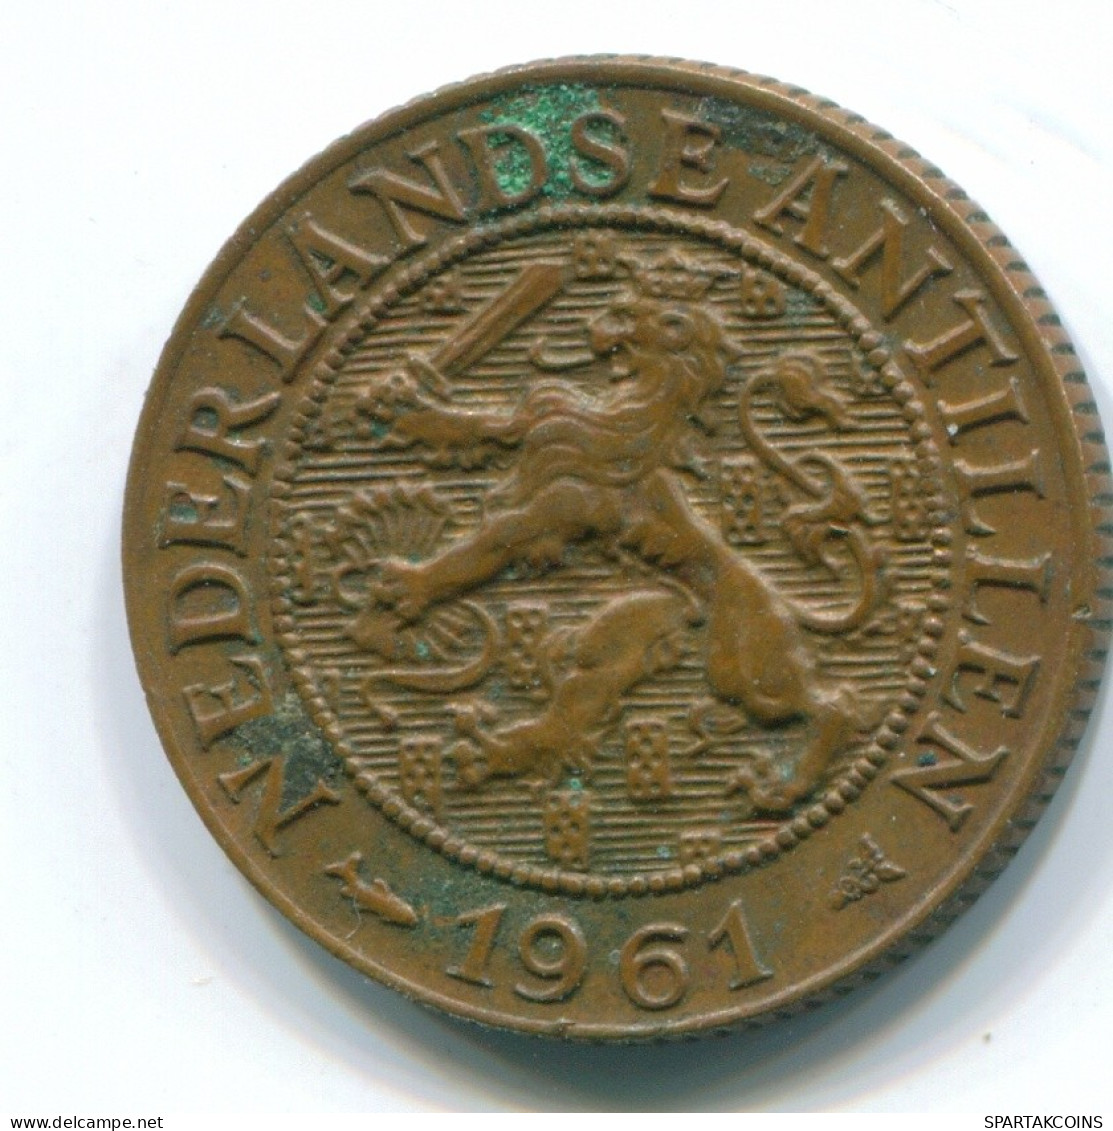 1 CENT 1961 NETHERLANDS ANTILLES Bronze Fish Colonial Coin #S11063.U.A - Antilles Néerlandaises